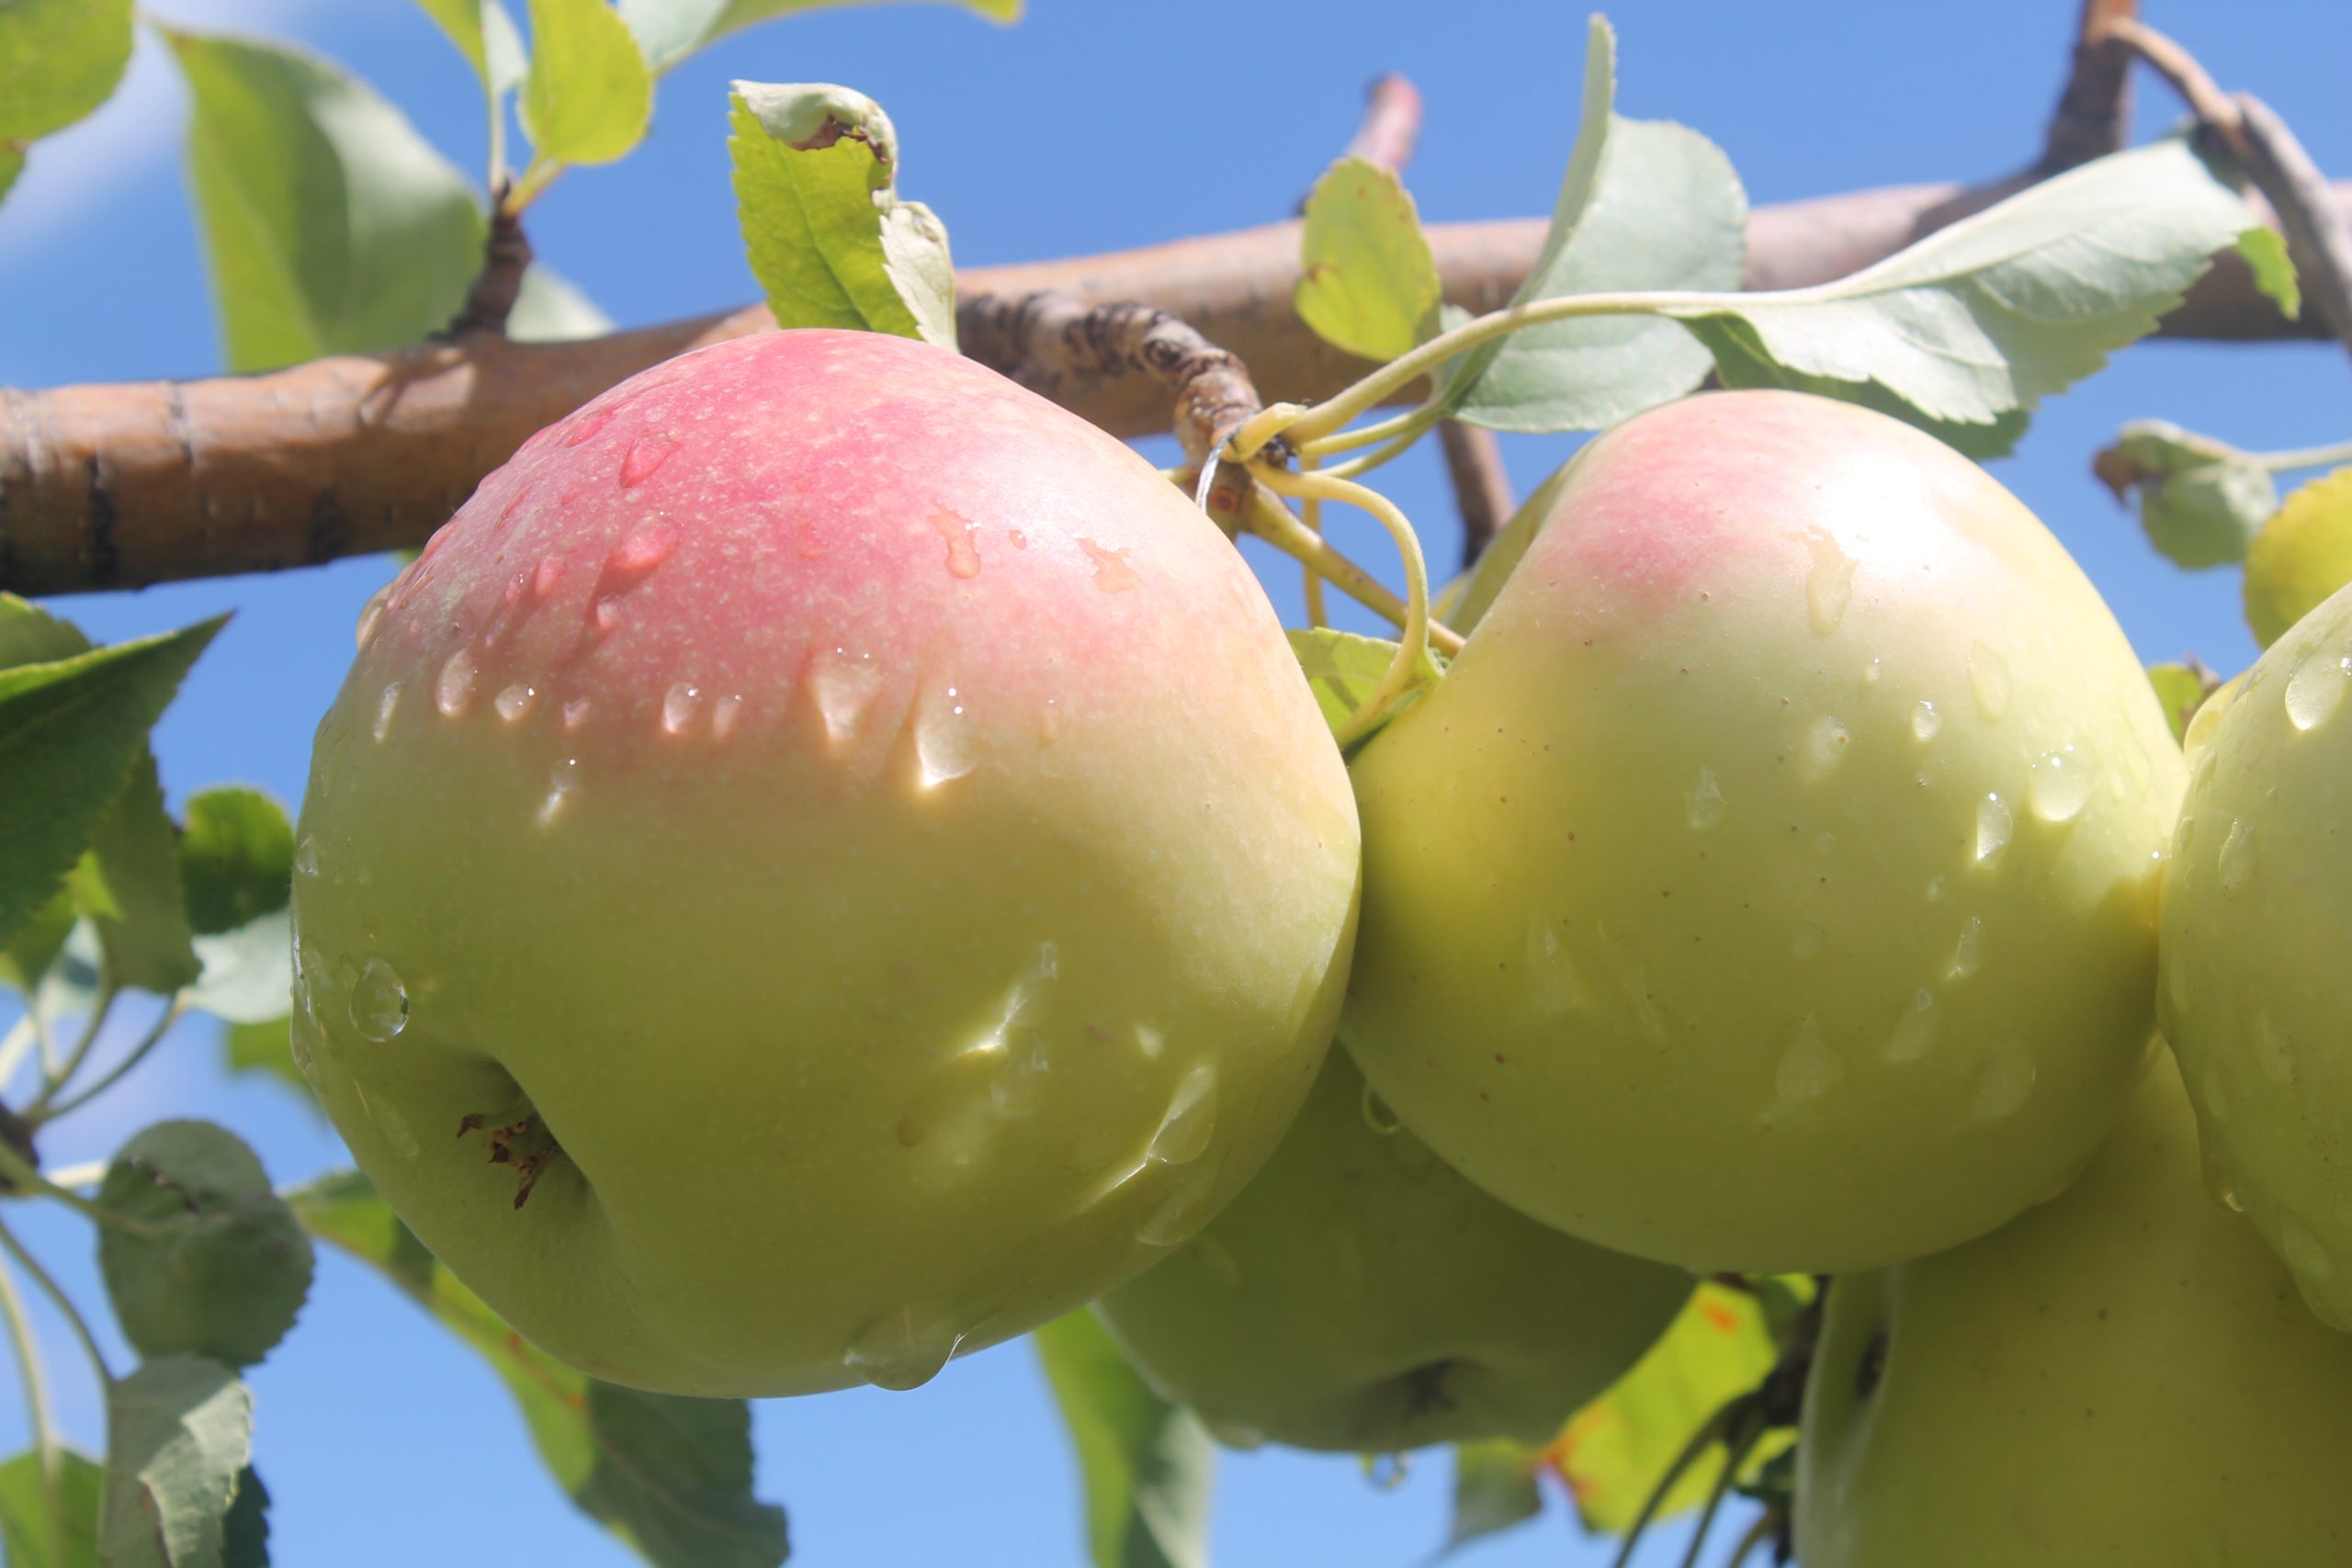 Drâa-Tafilalet contribue à près de 60% de la production nationale des pommes